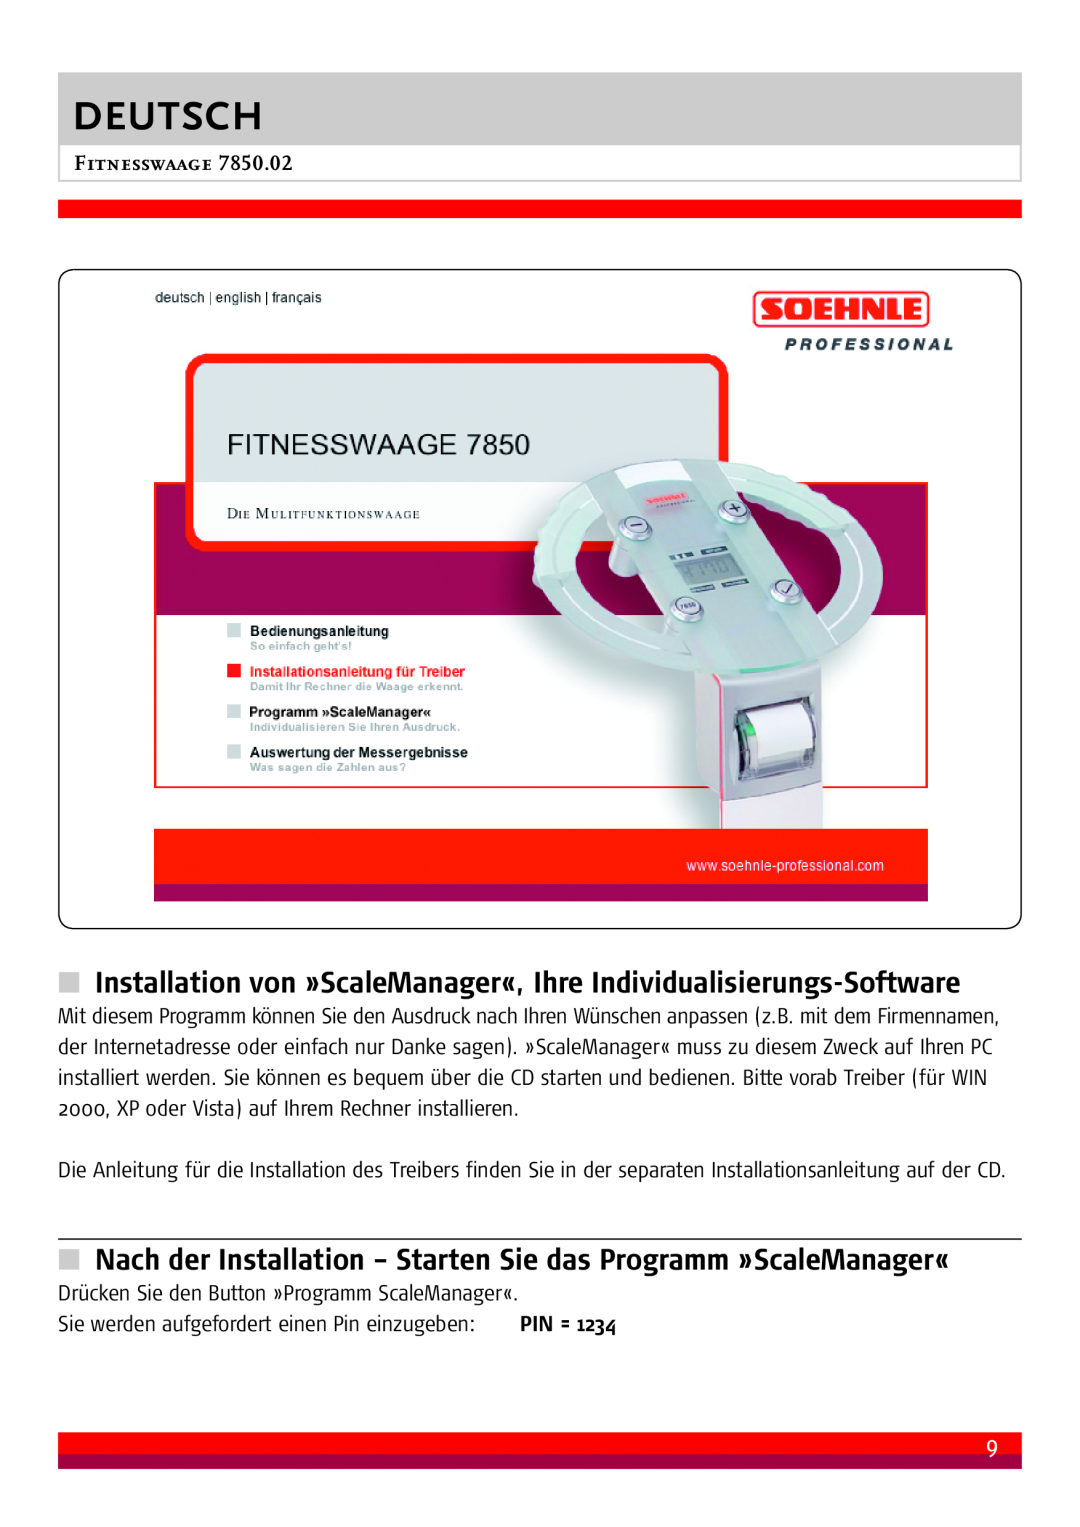 Soehnle 7850.02 manual Installation von »ScaleManager«, Ihre Individualisierungs-Software, Deutsch, Fitnesswaage 